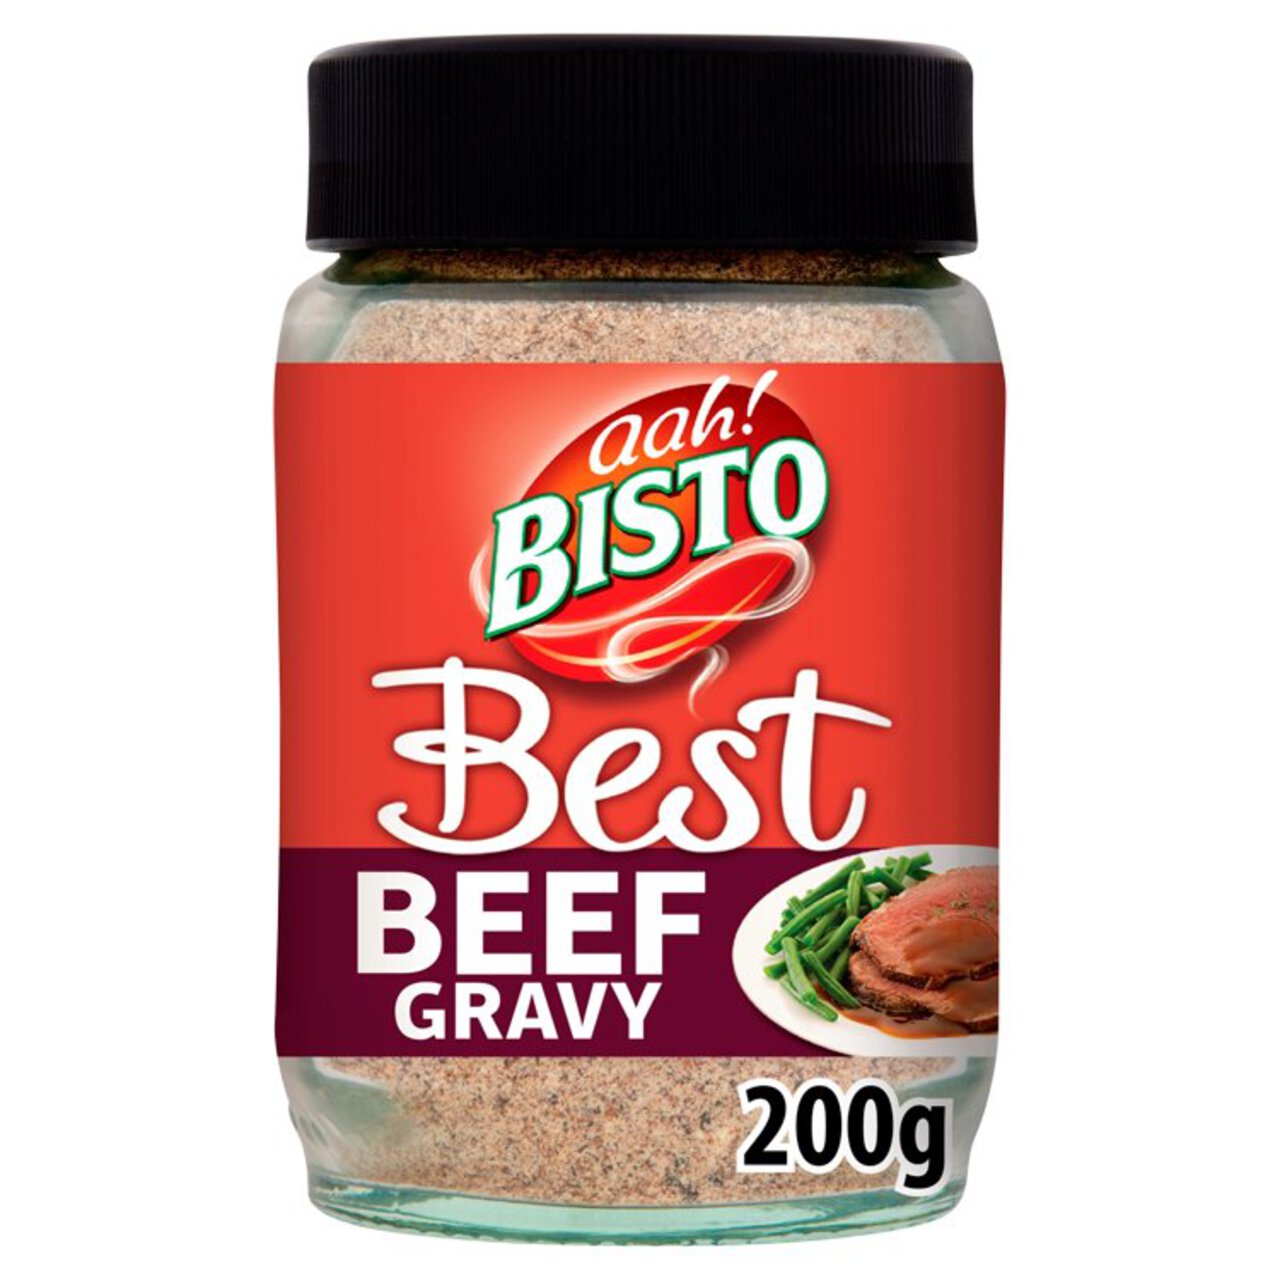 Bisto Best Beef Gravy 230g